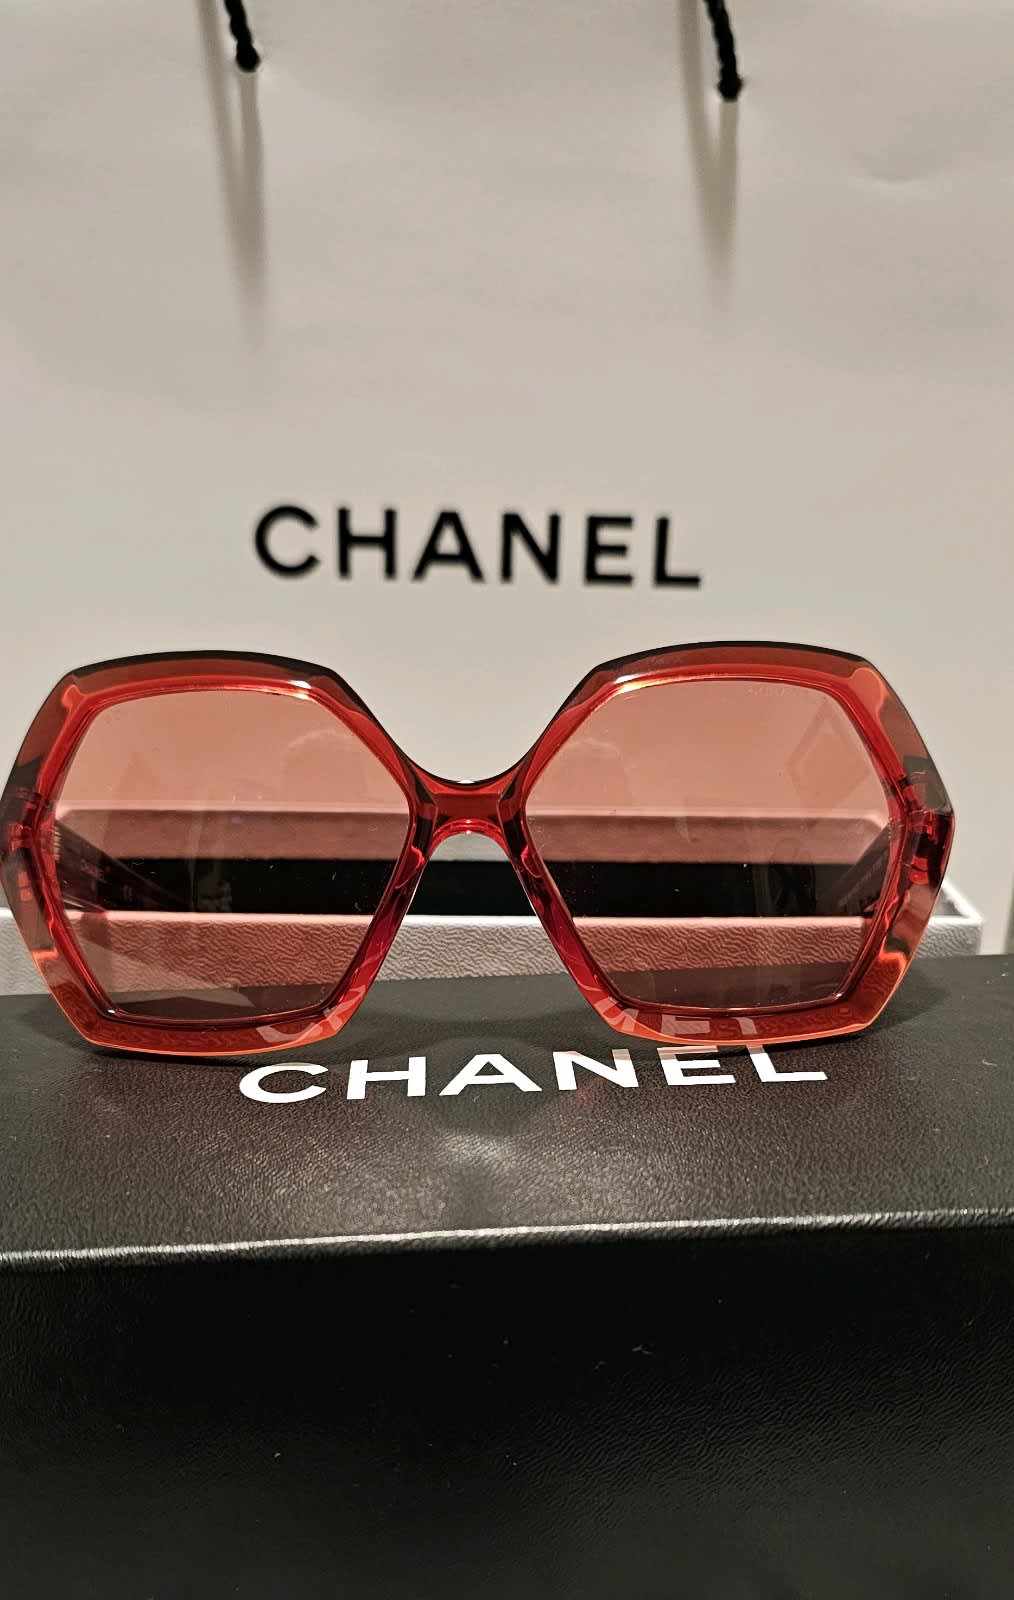 CHANEL sunglasses - 5233 501/3C - Black - Silver CoCo Chanel tips - Womens